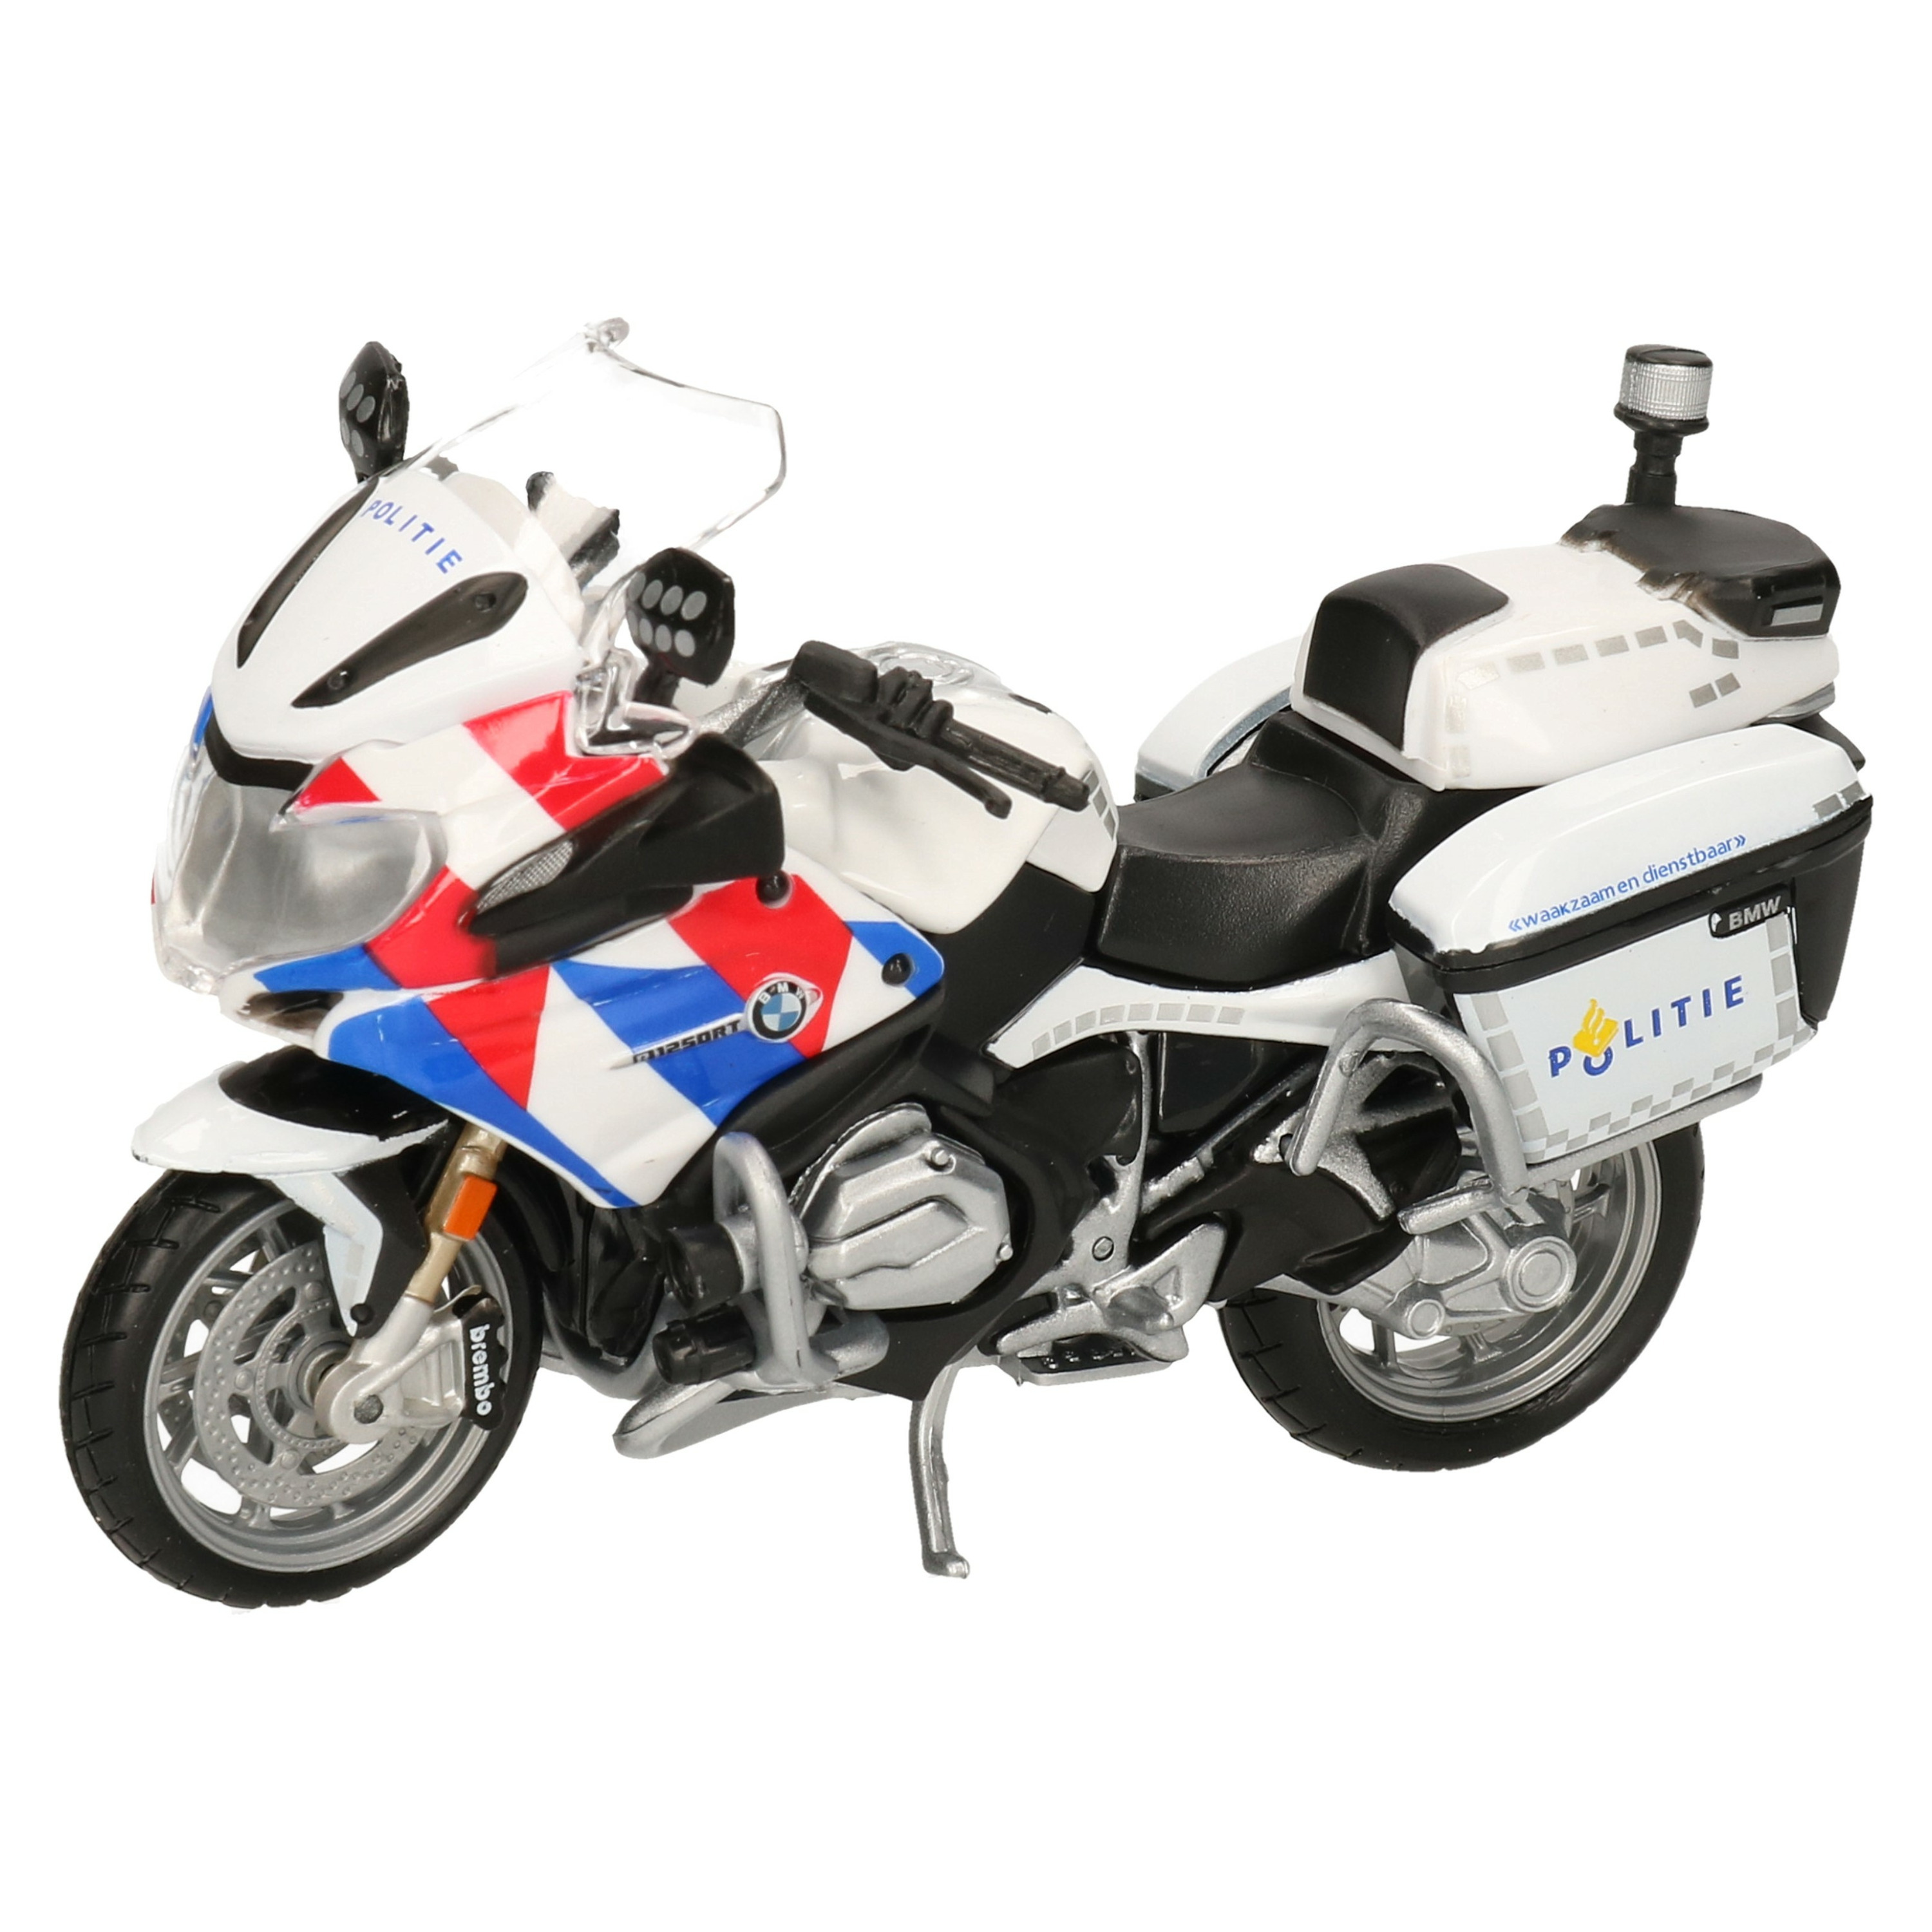 Model motor-speelgoed motor BMW politie wit schaal 1:18-12 x 5 x 8 cm